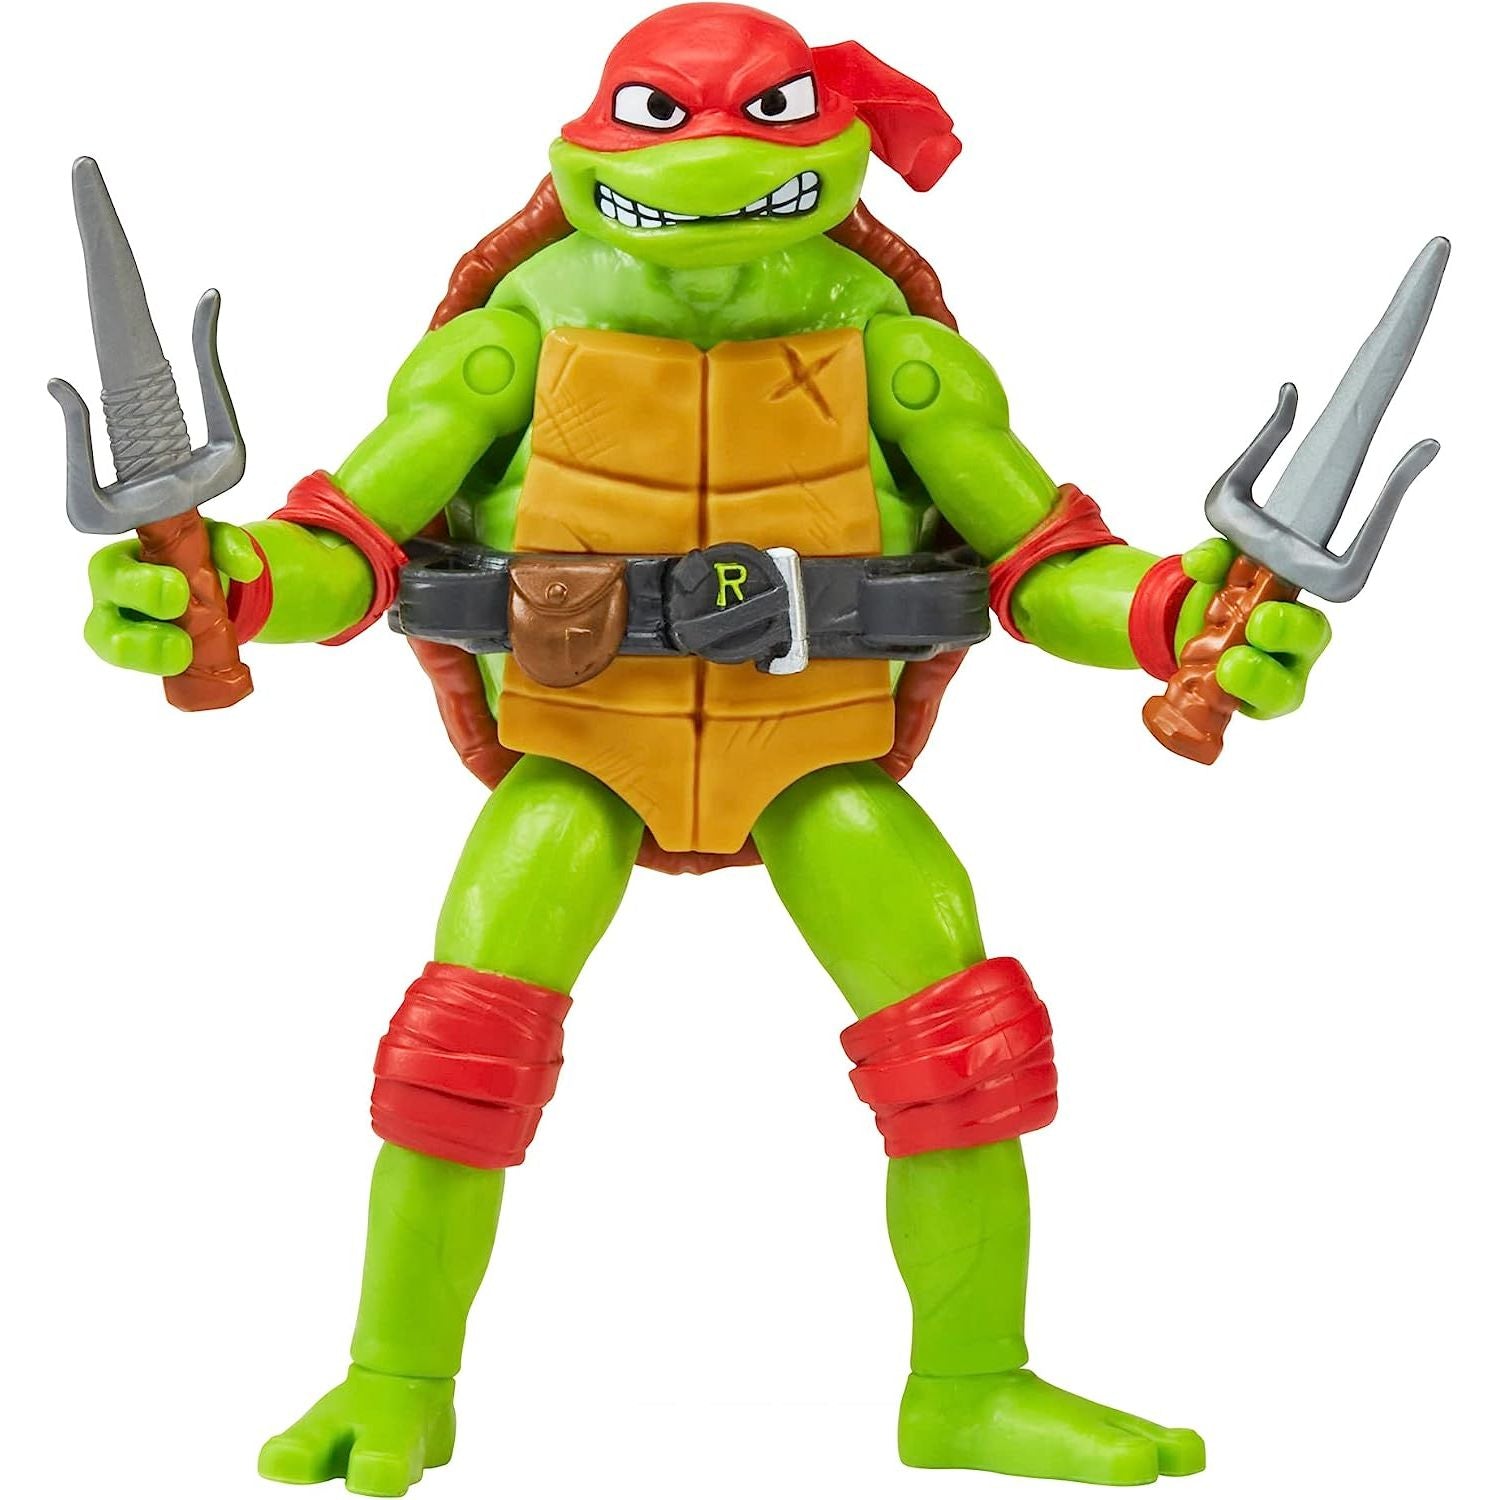 Teenage Mutant Ninja Turtles - Mutant Mayhem 4.6” Raphael Basic Action Figure